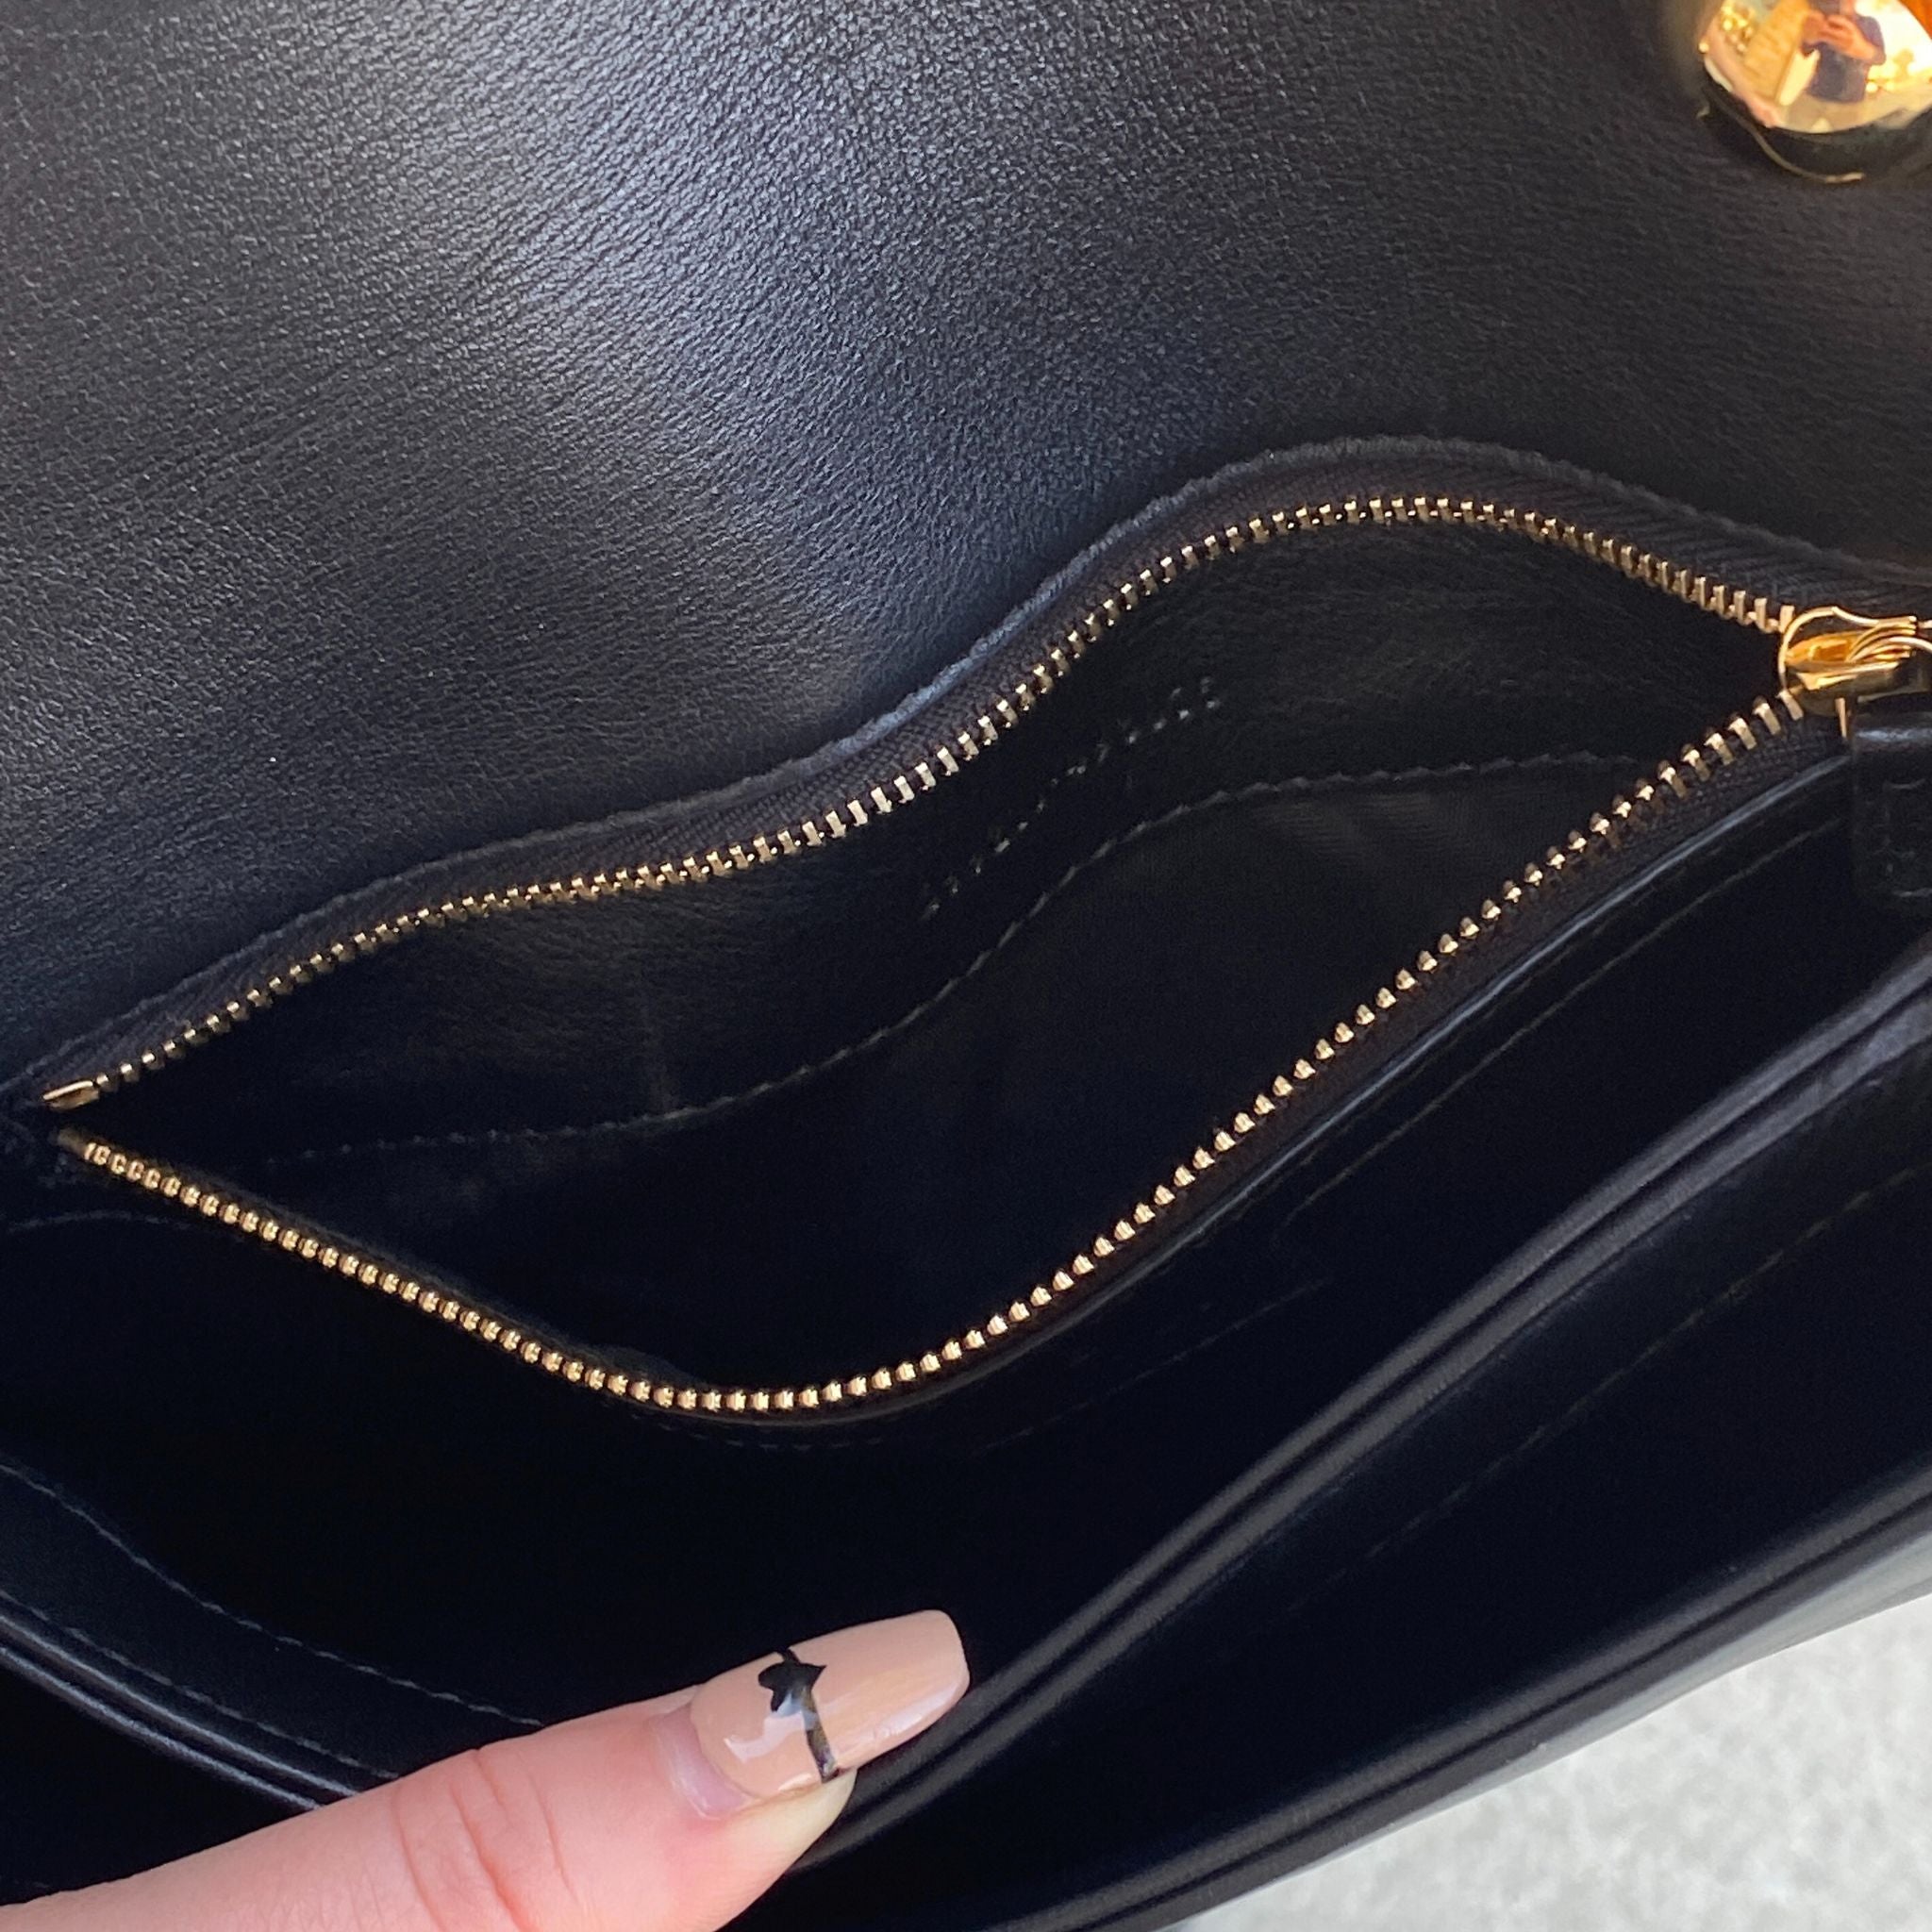 Gucci Blondie top handle bag in black leather